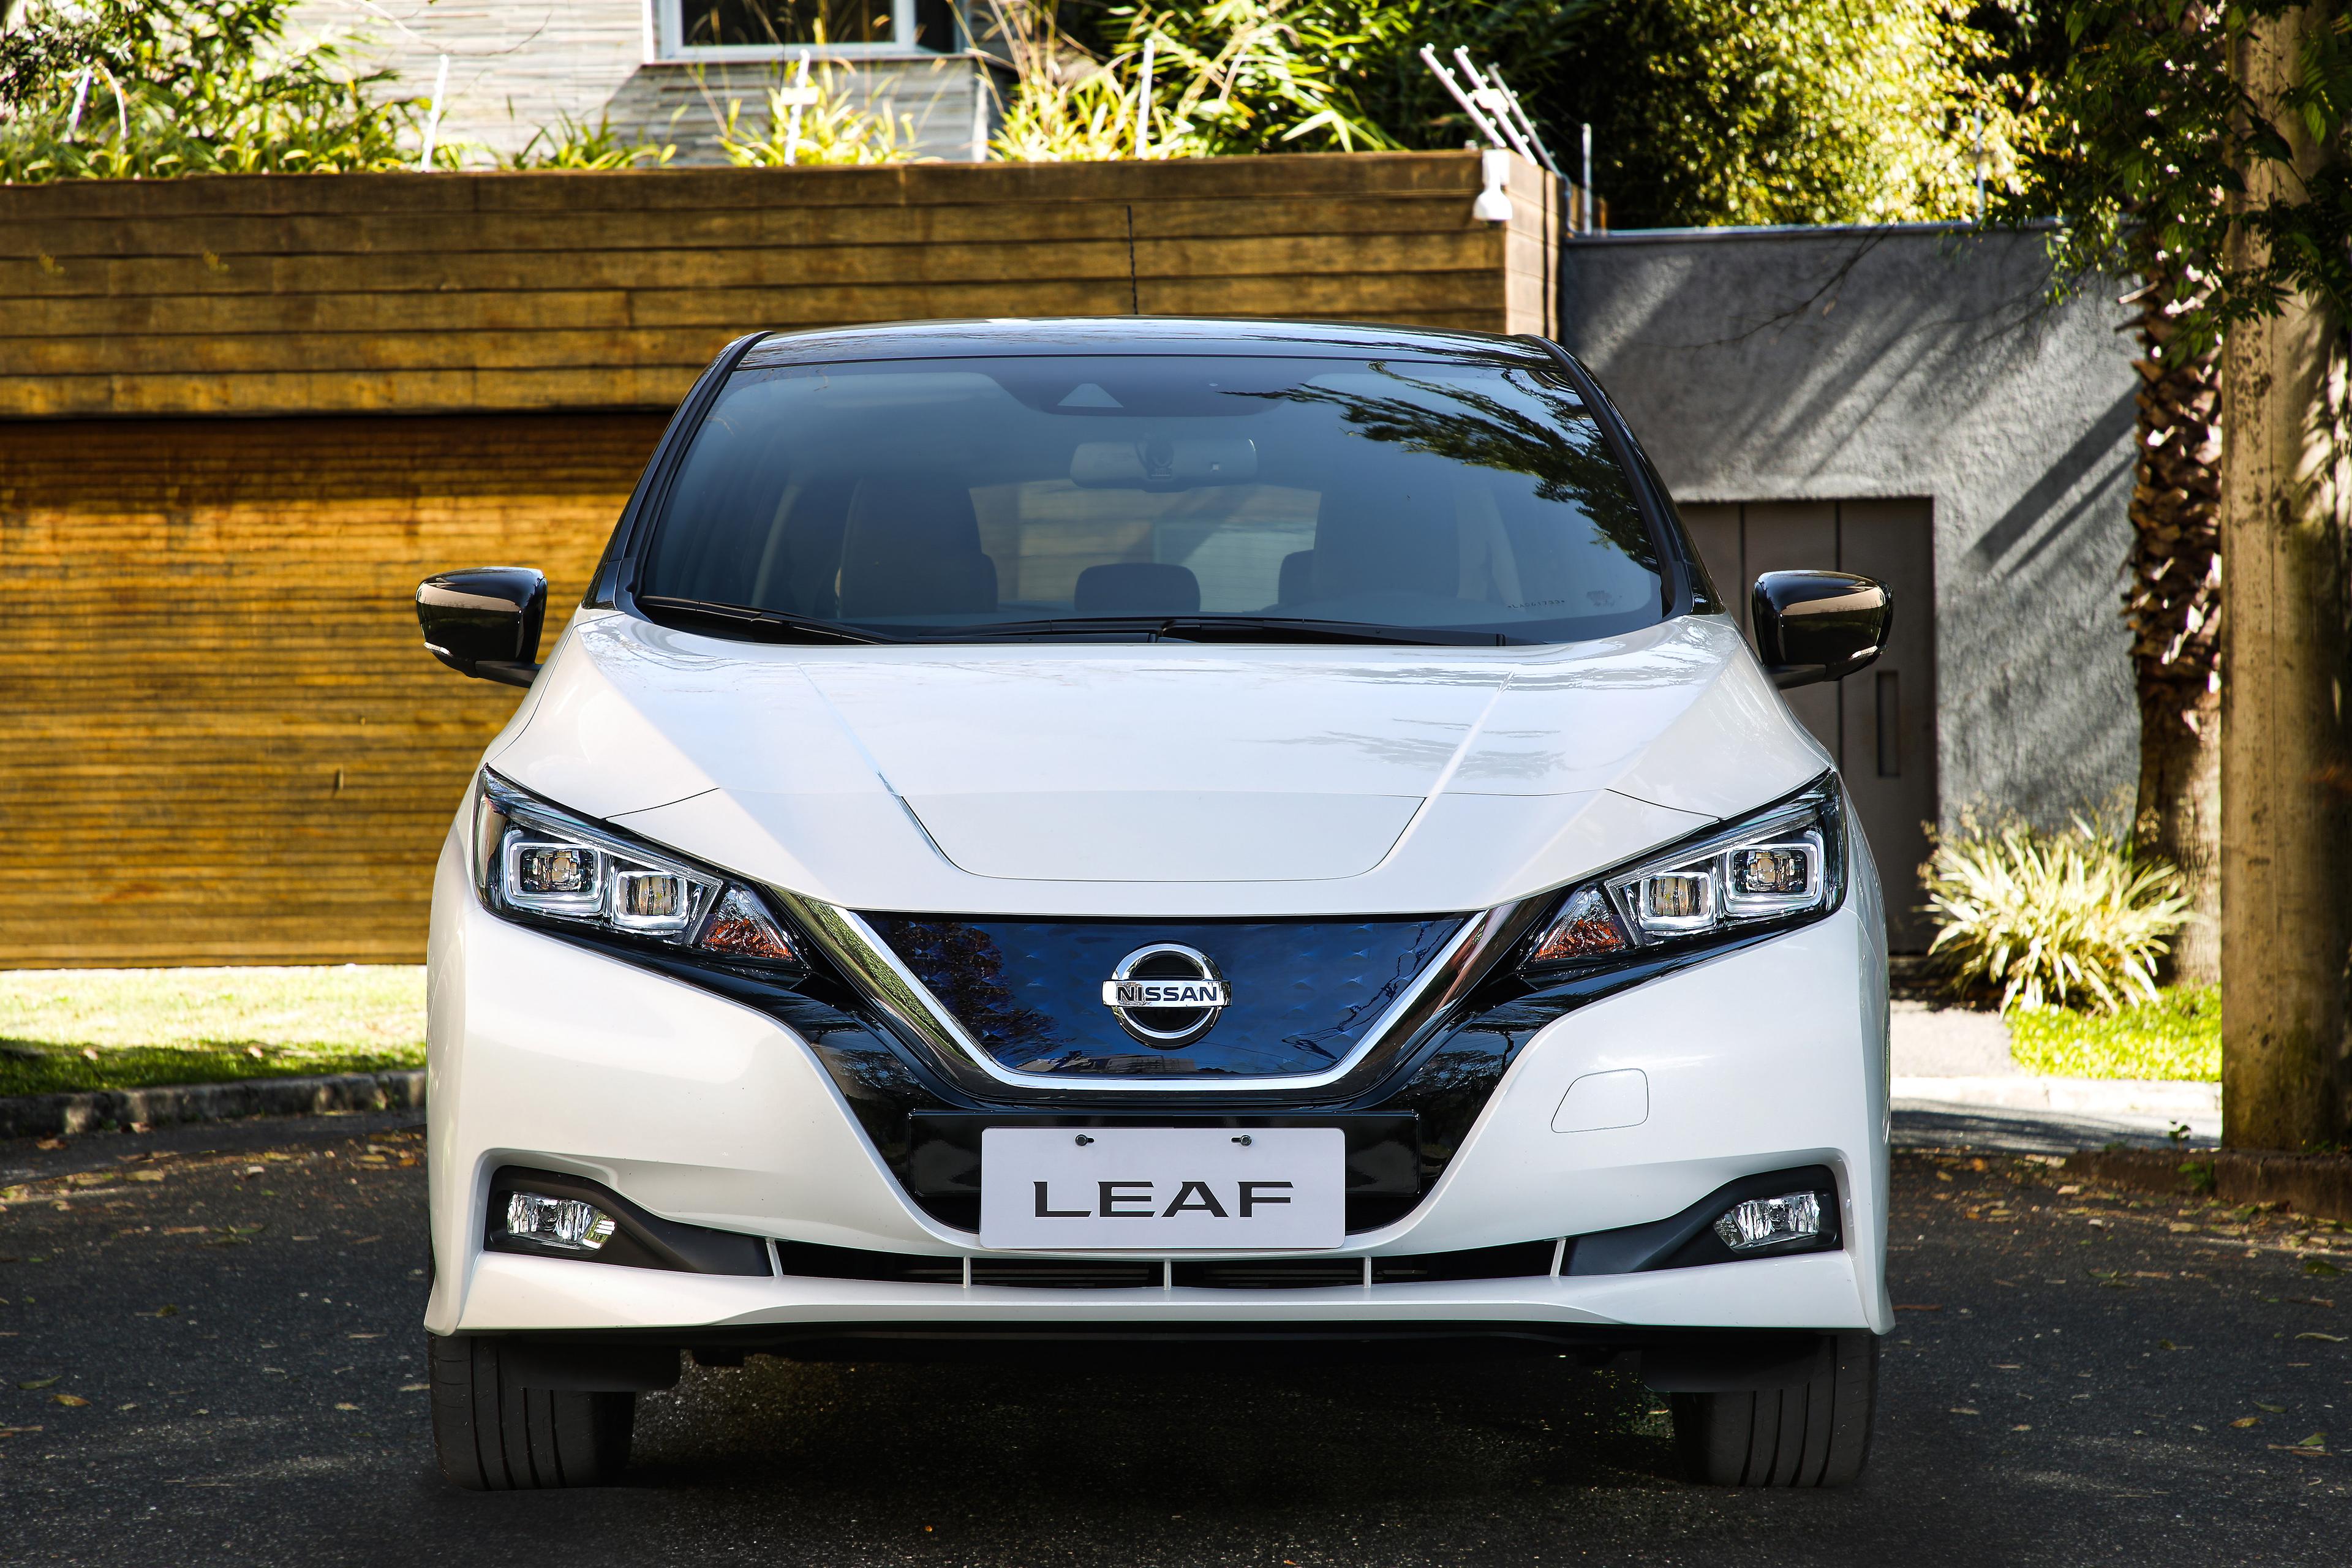 Nissan_Leaf_front